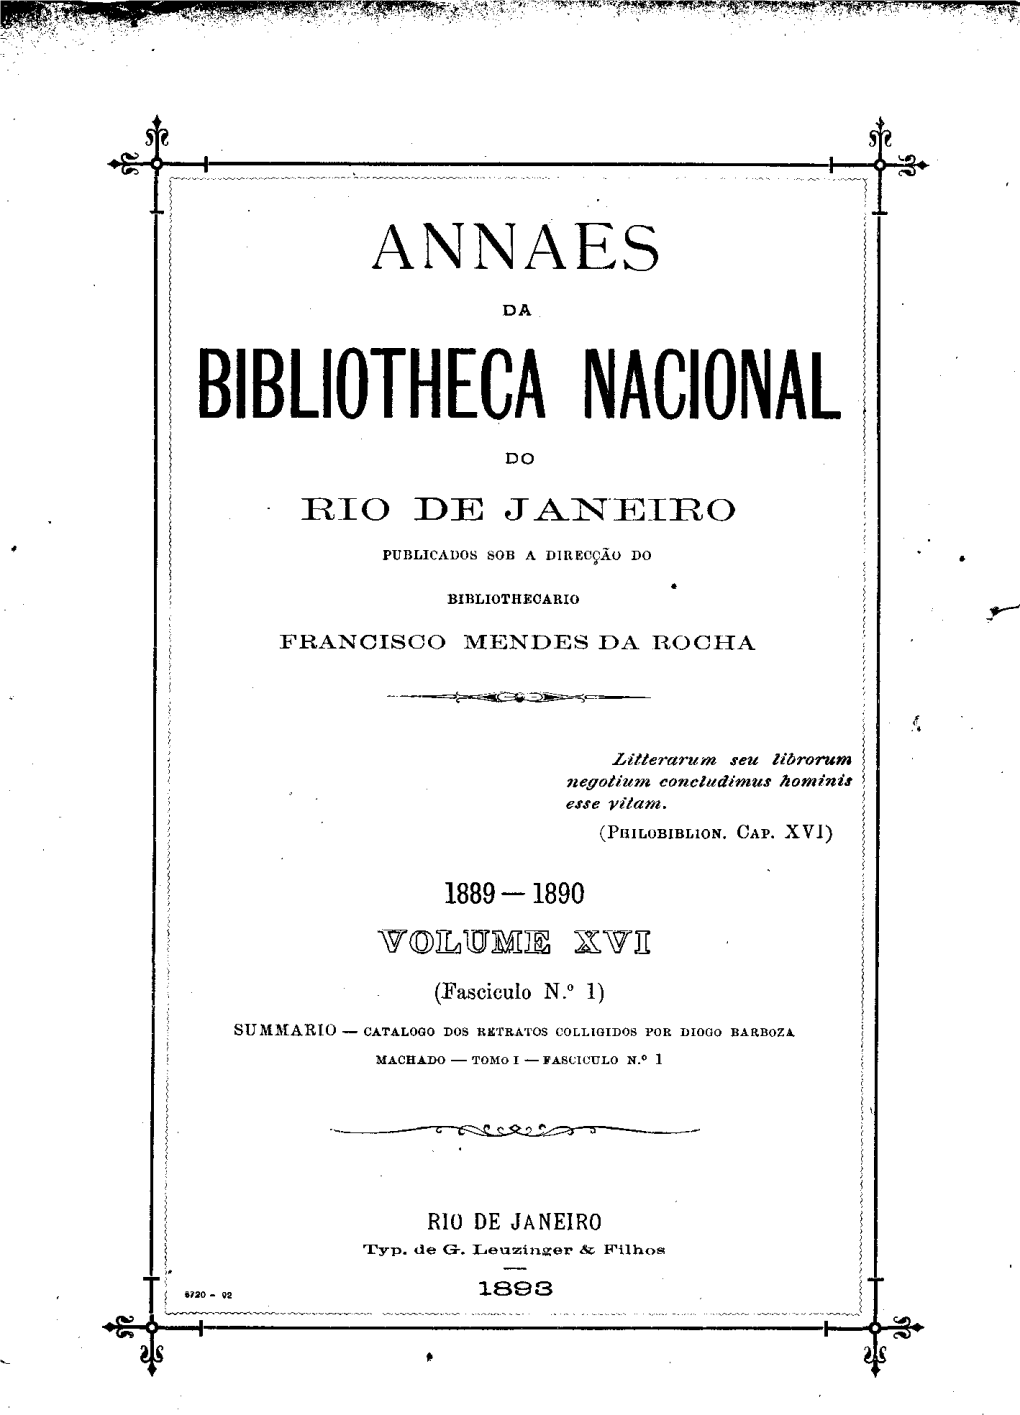 Bibliotheca Nacional